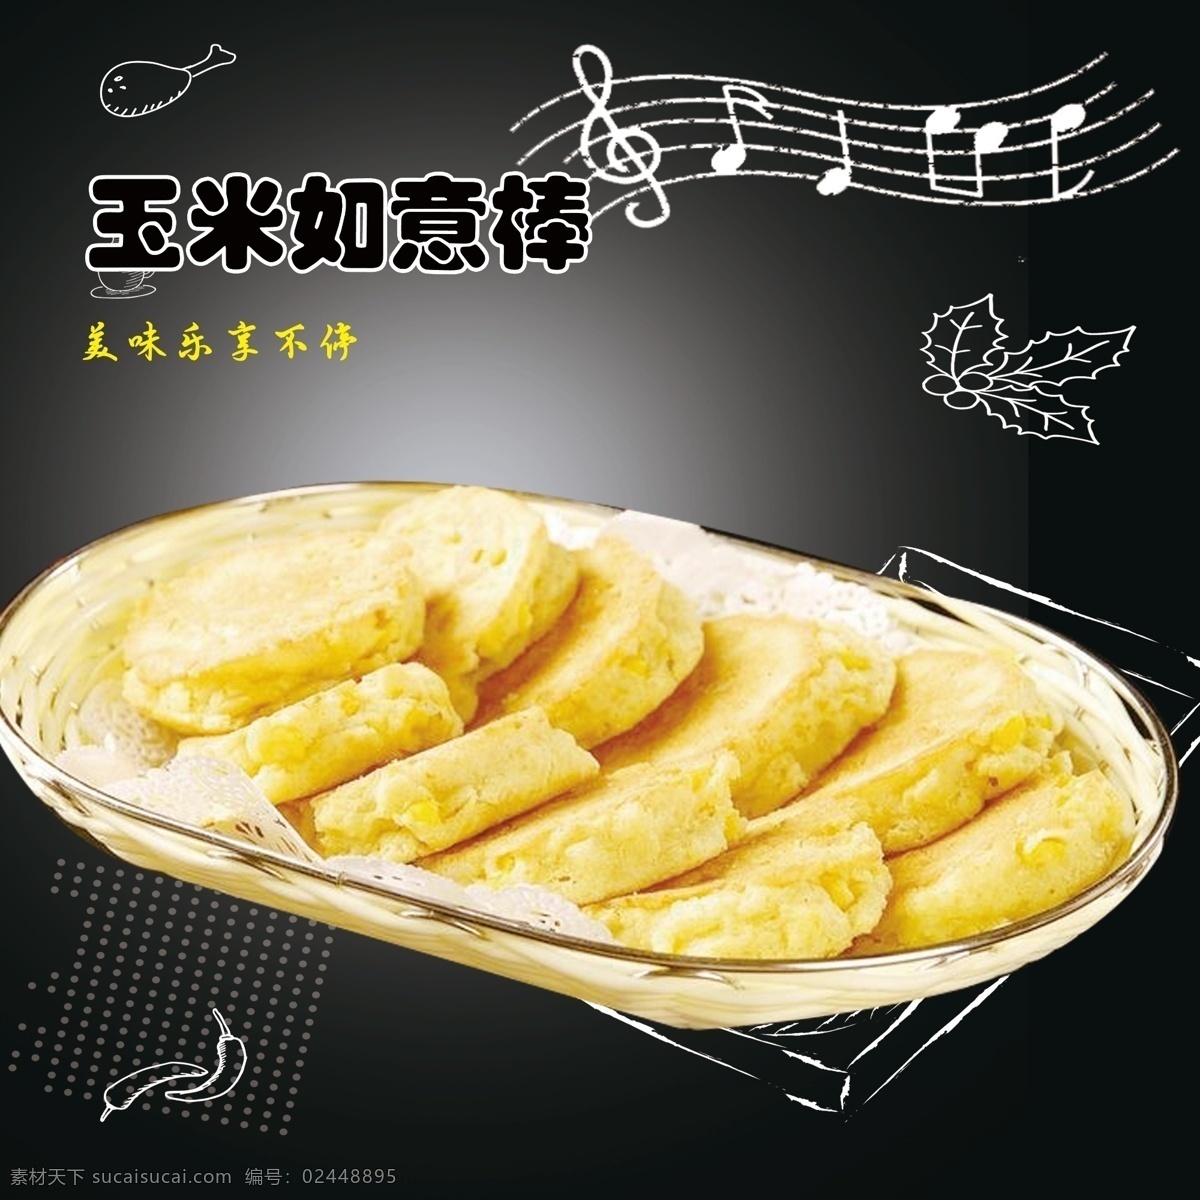 黄金 玉米饼 分层 小吃 宣传海报 美食 餐饮美食 西餐美食 共享共赢